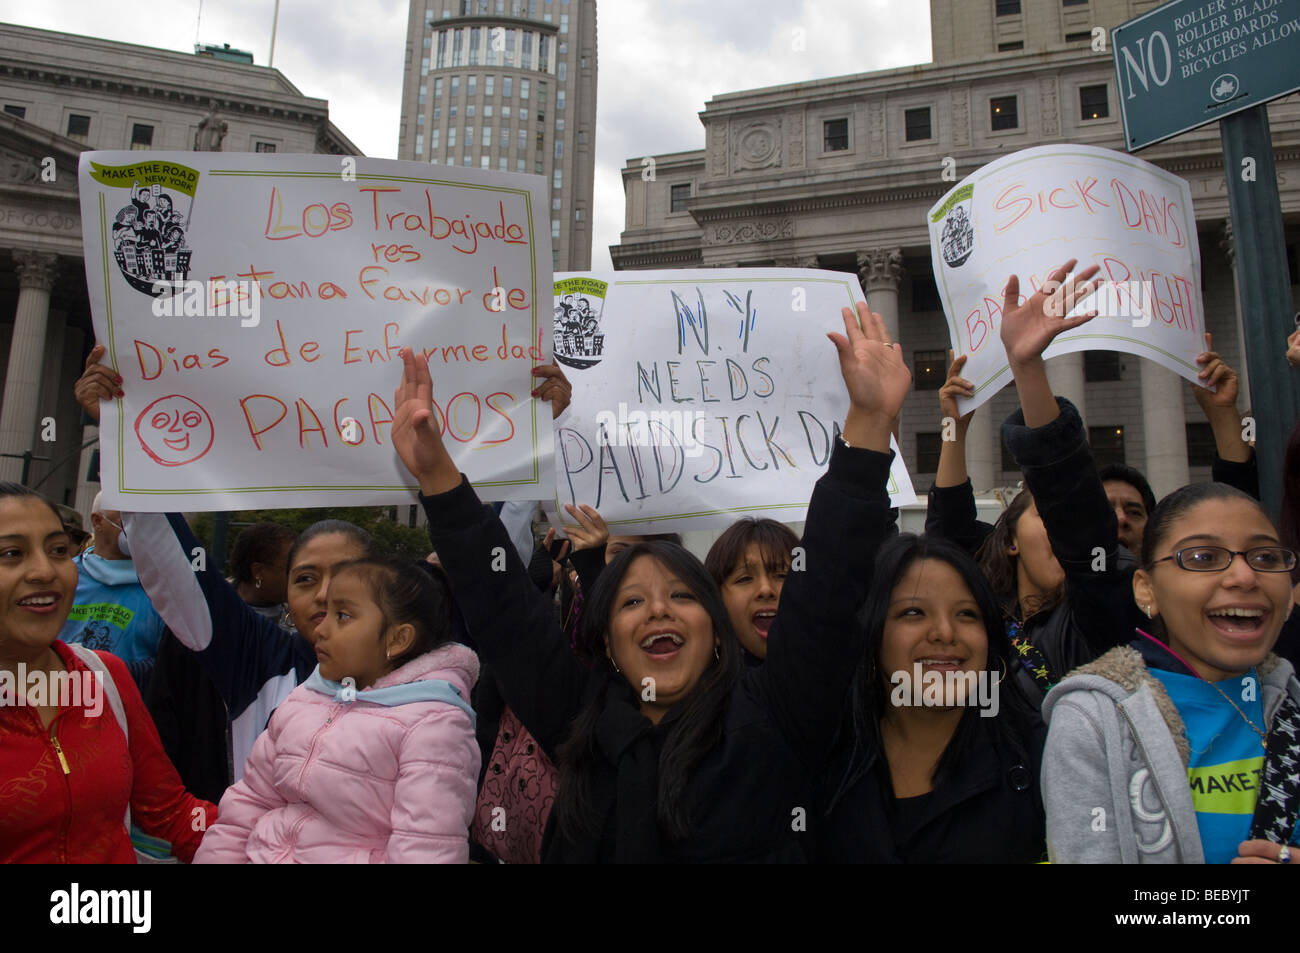 Les travailleurs immigrés, les étudiants et leurs partisans rassemblement à New York demande au Conseil municipal d'adopter le projet de loi de congés de maladie payés Banque D'Images